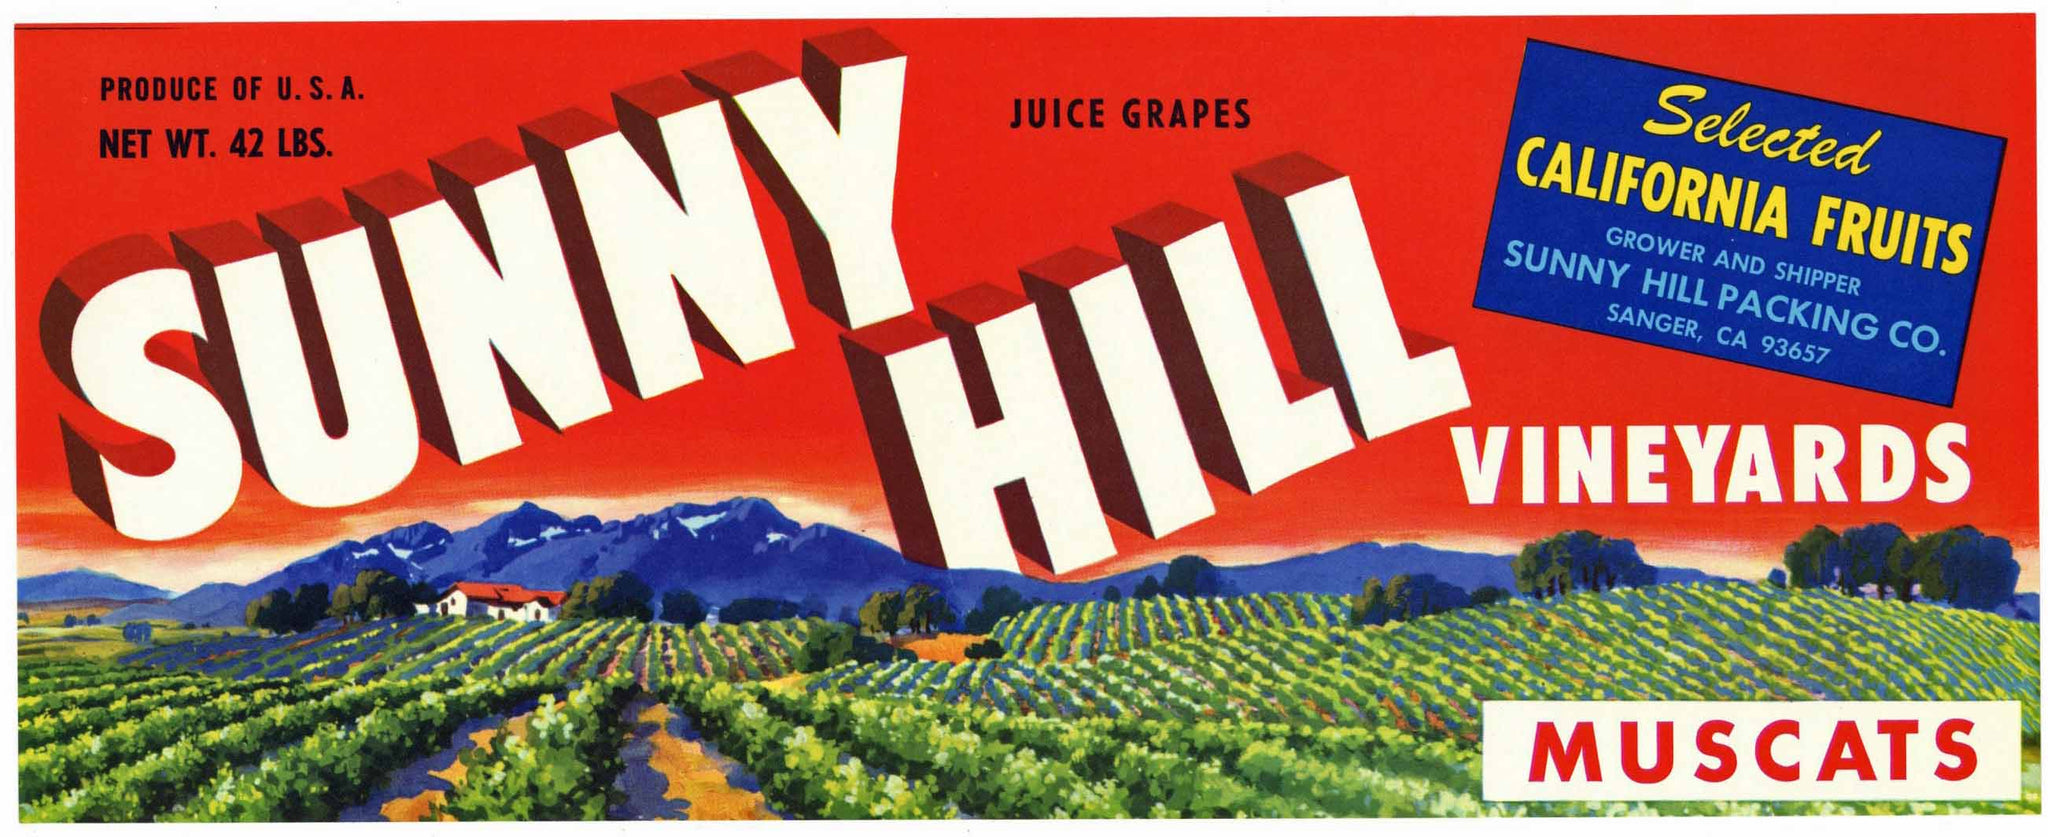 Sunny Hill Brand Sanger California Grape Crate Label